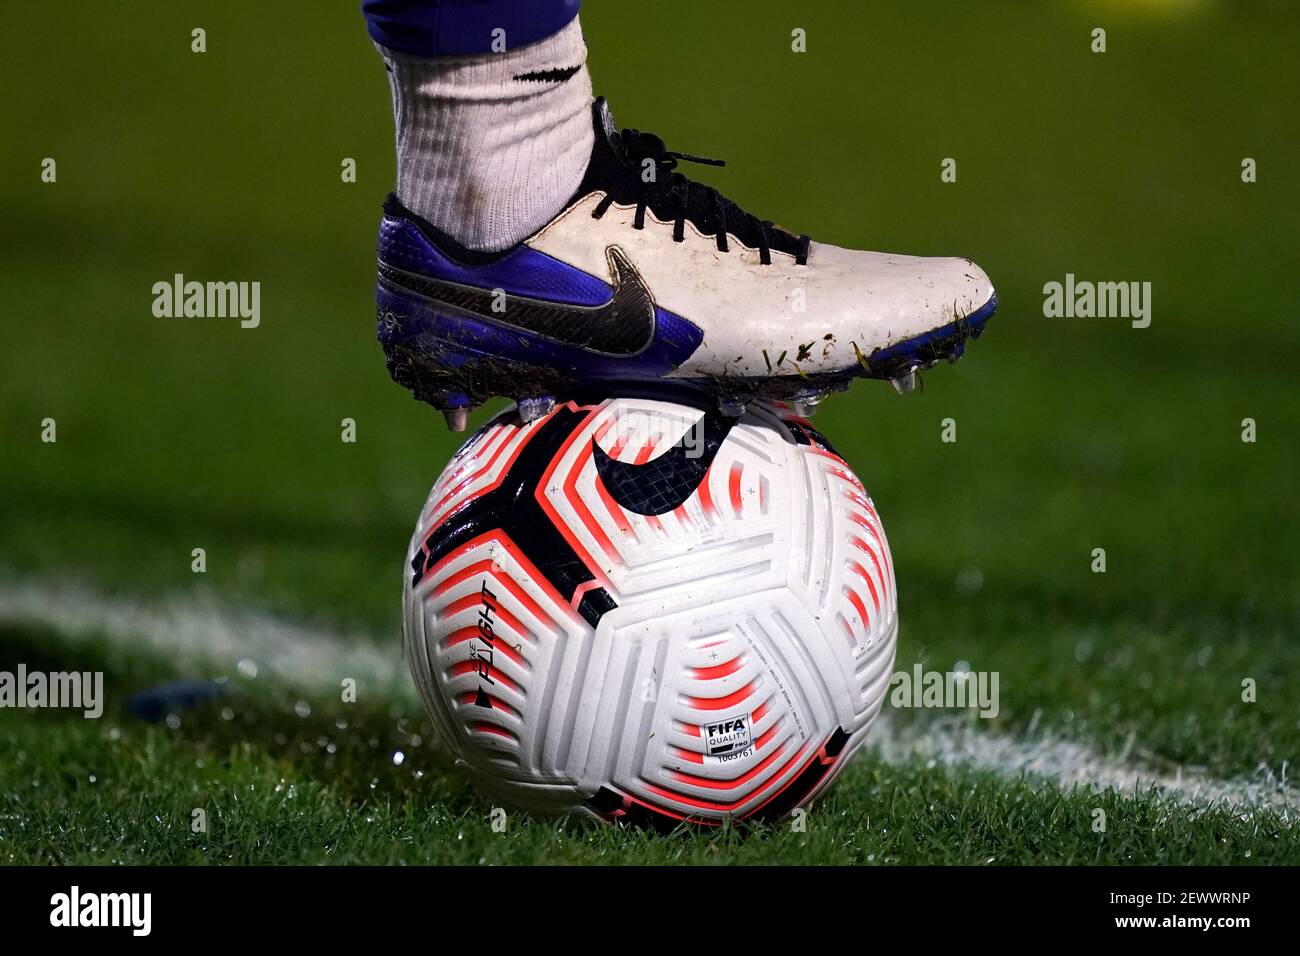 Un giocatore che indossa scarpe Nike con il piede su un pallone Nike  durante il riscaldamento durante la partita della UEFA Champions League  femminile al Kingsmeadow Stadium di Londra. Data immagine: Mercoledì